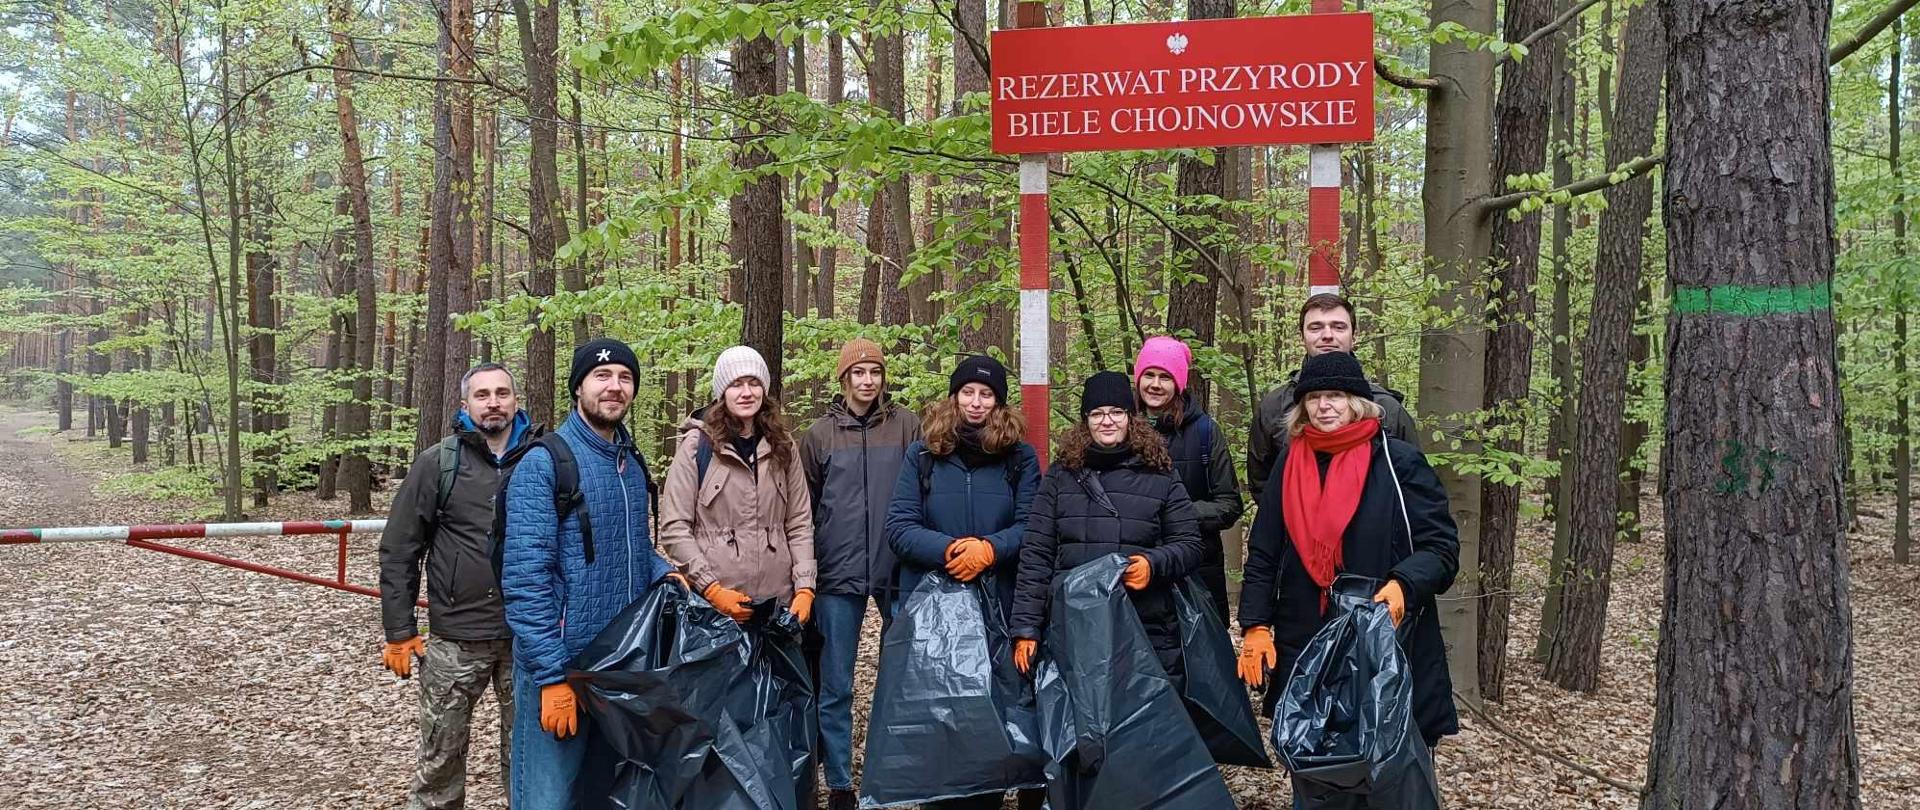 Grupa osób z workami na śmieci, w rękawiczkach stoi pod tablicą z nazwą rezerwatu Biele Chojnowskie, przed szlabanem prowadzącym do lasu 